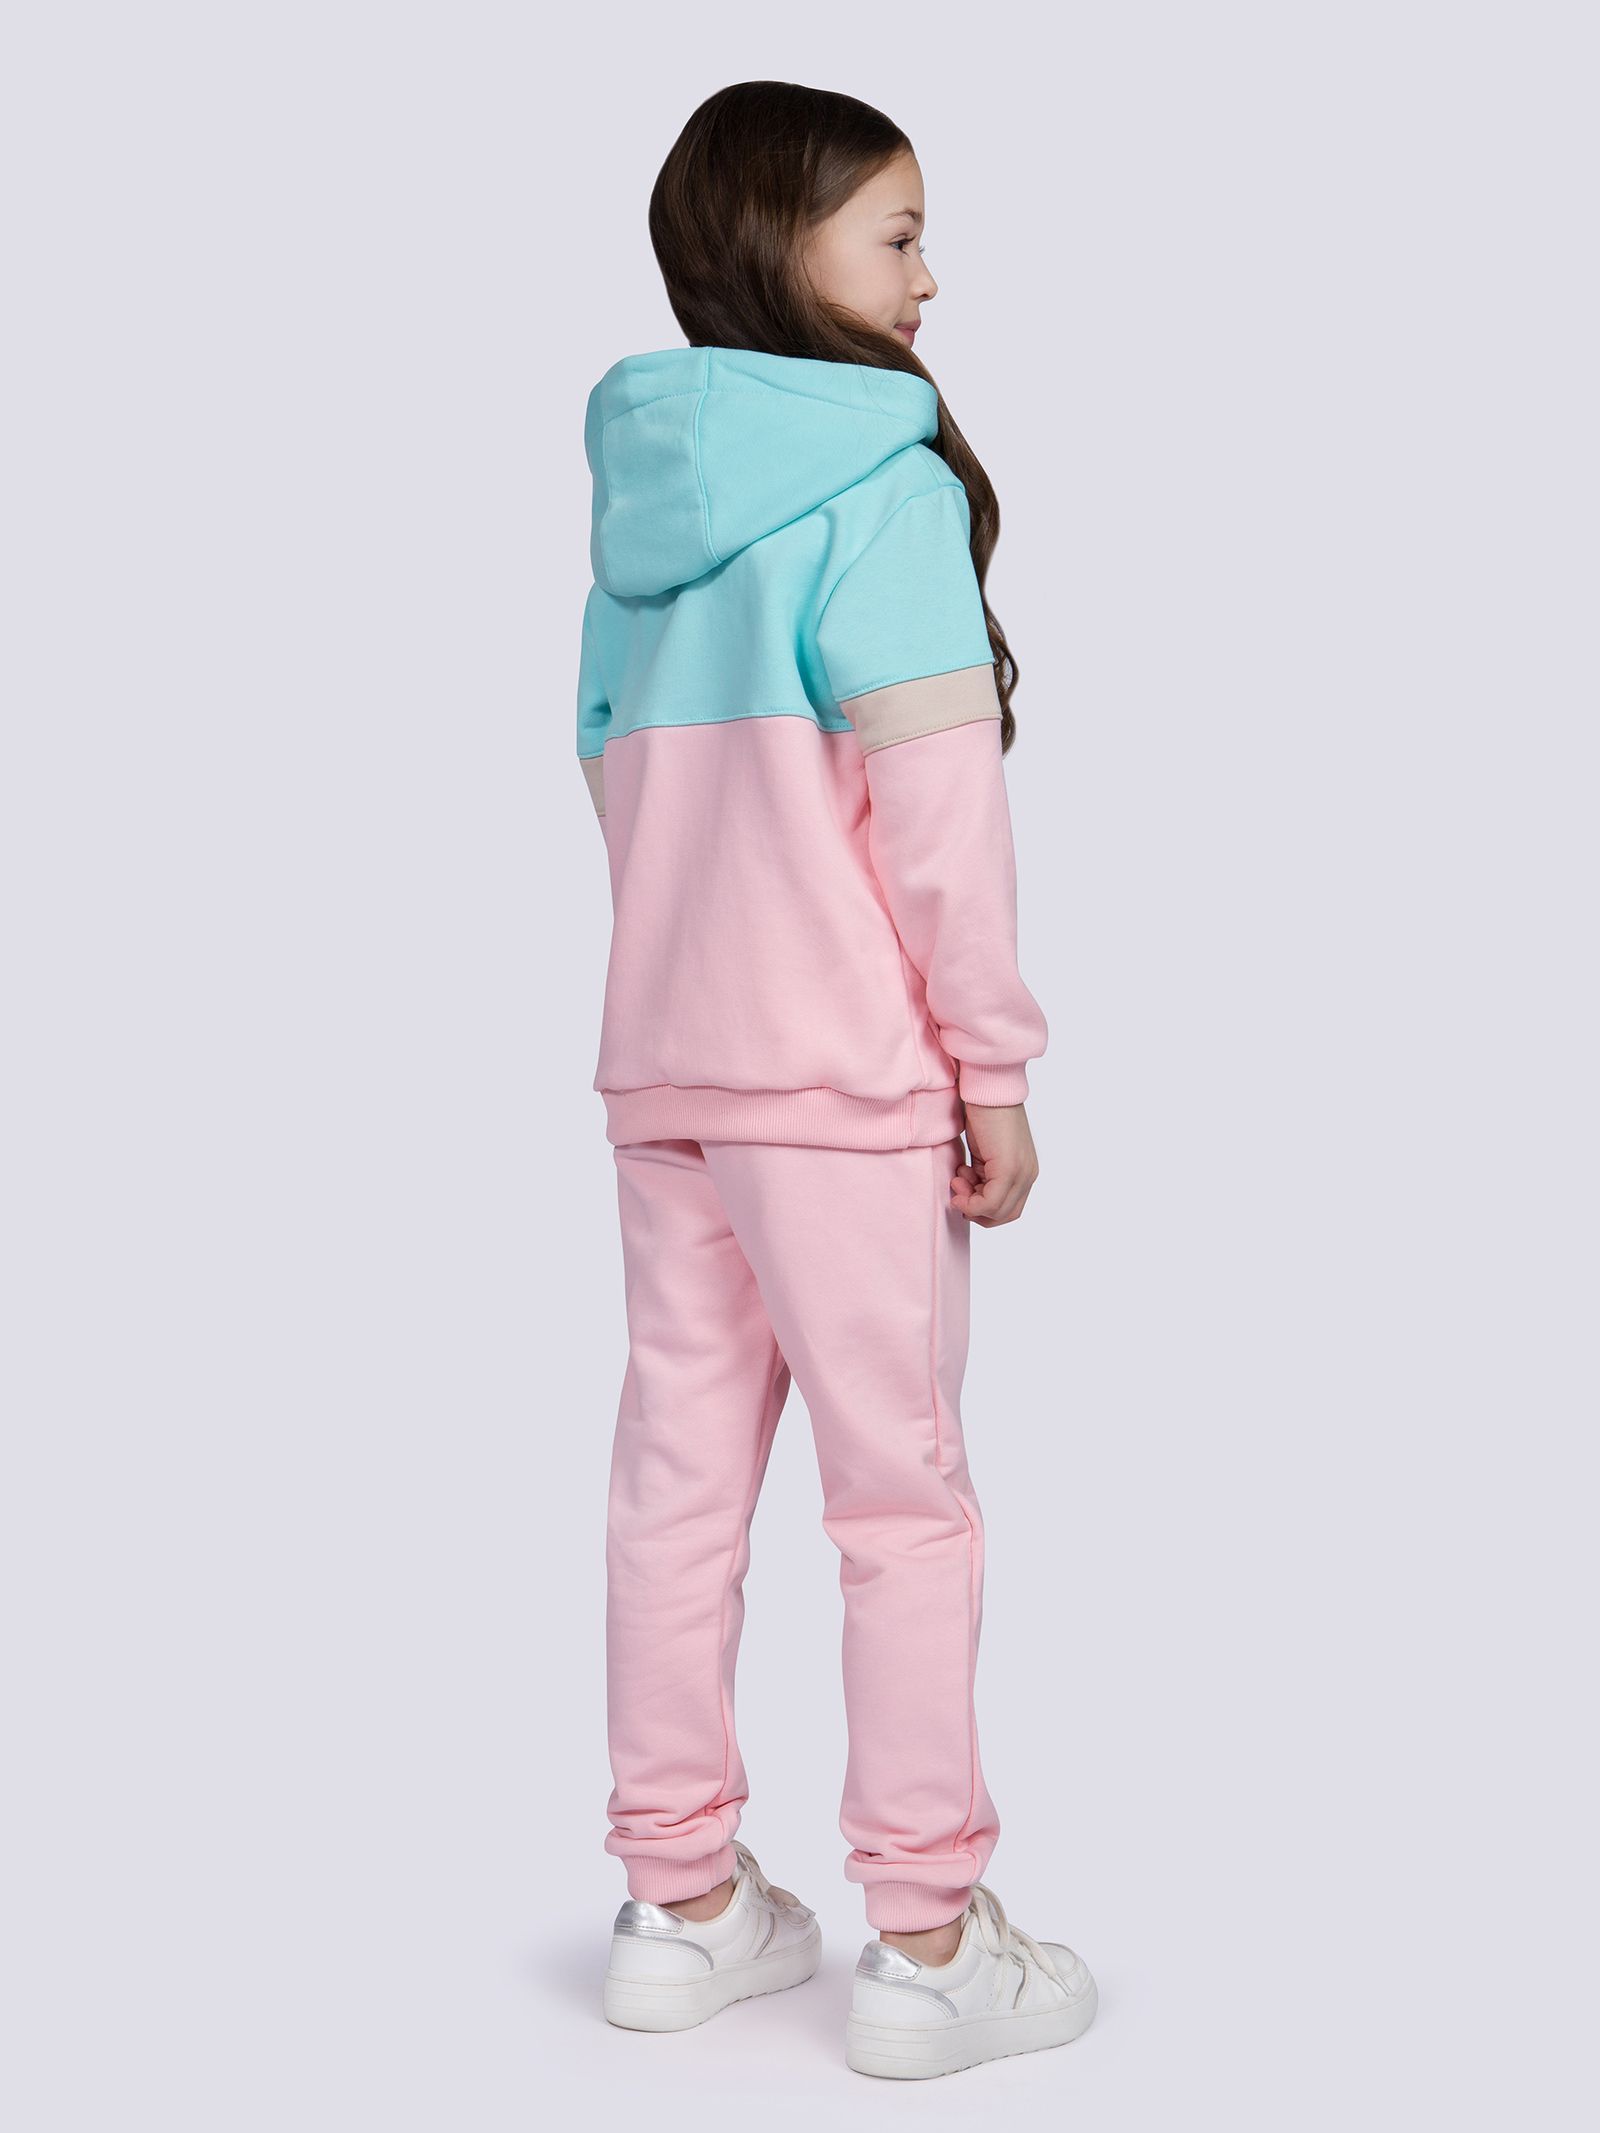 Костюм-3730 оптом от производителя детской одежды 'Алёна'